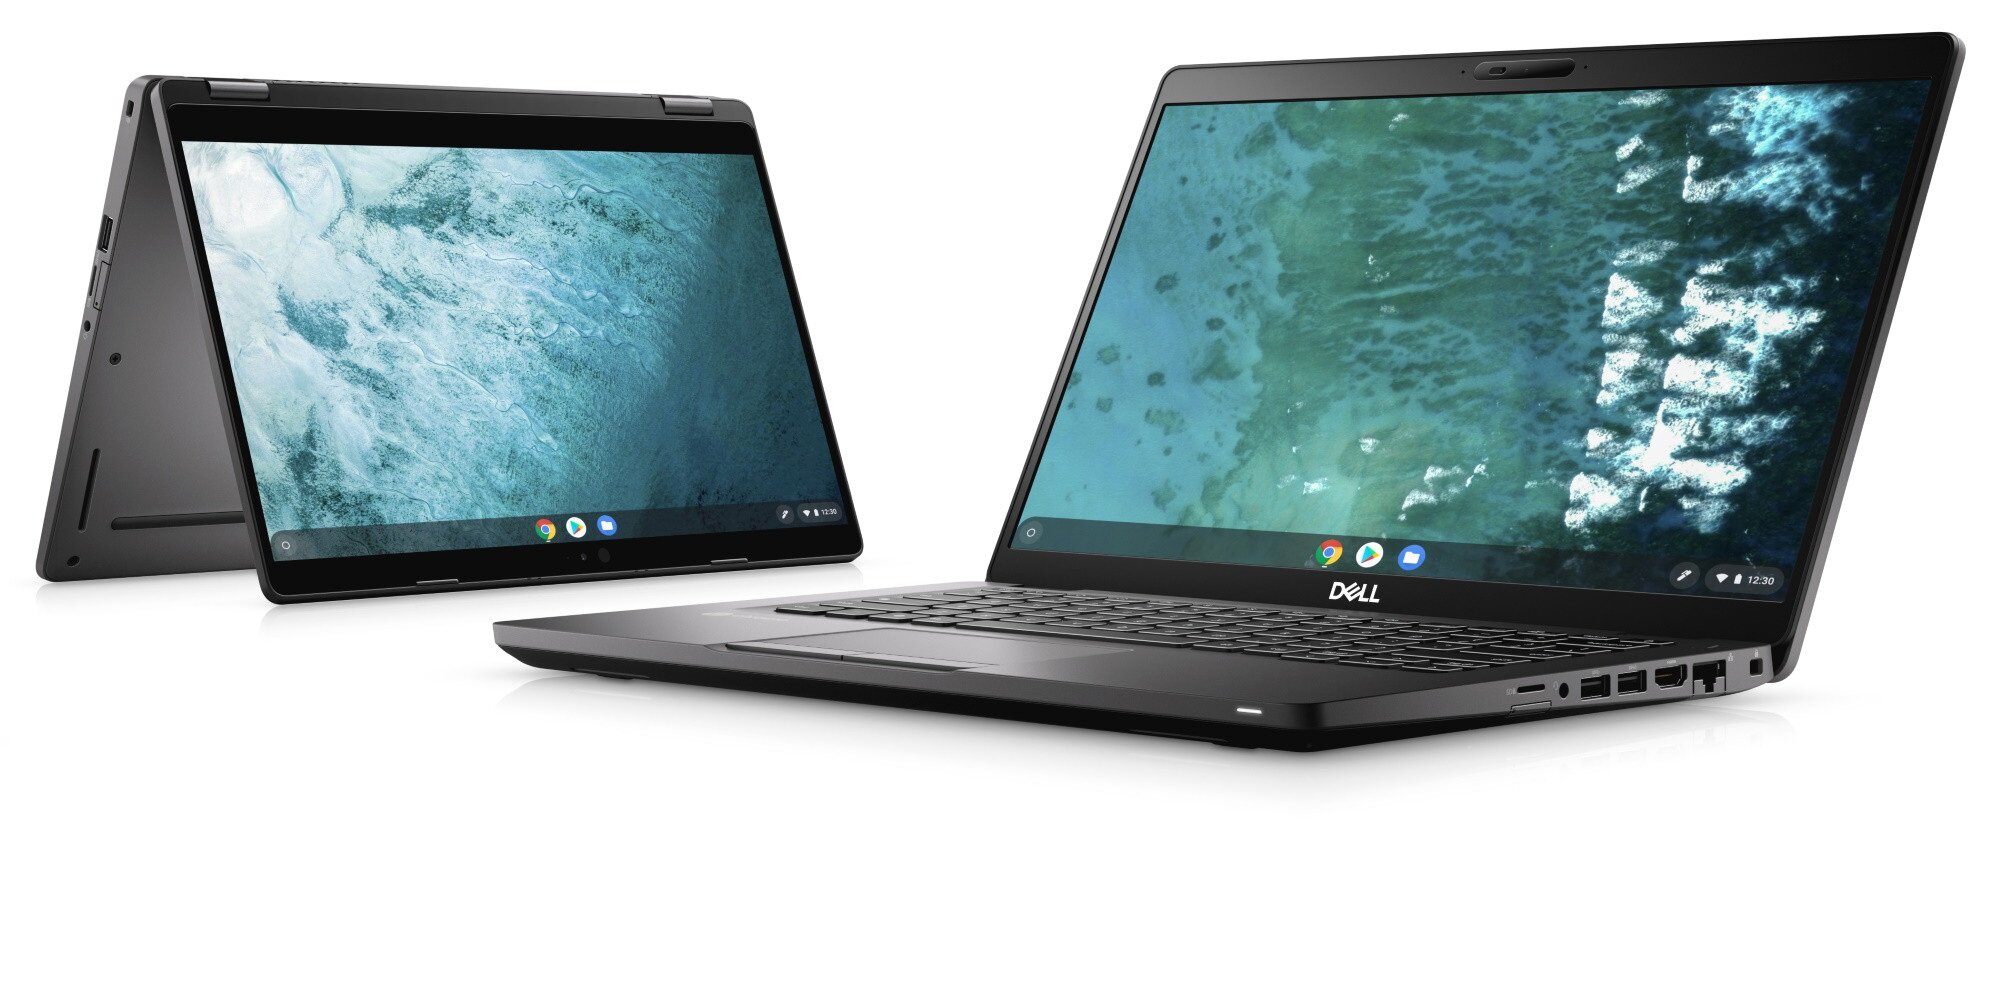 Οι Google και Dell συνεργάζονται και επιτίθενται στη Microsoft με τα Chromebook Enterprise laptops